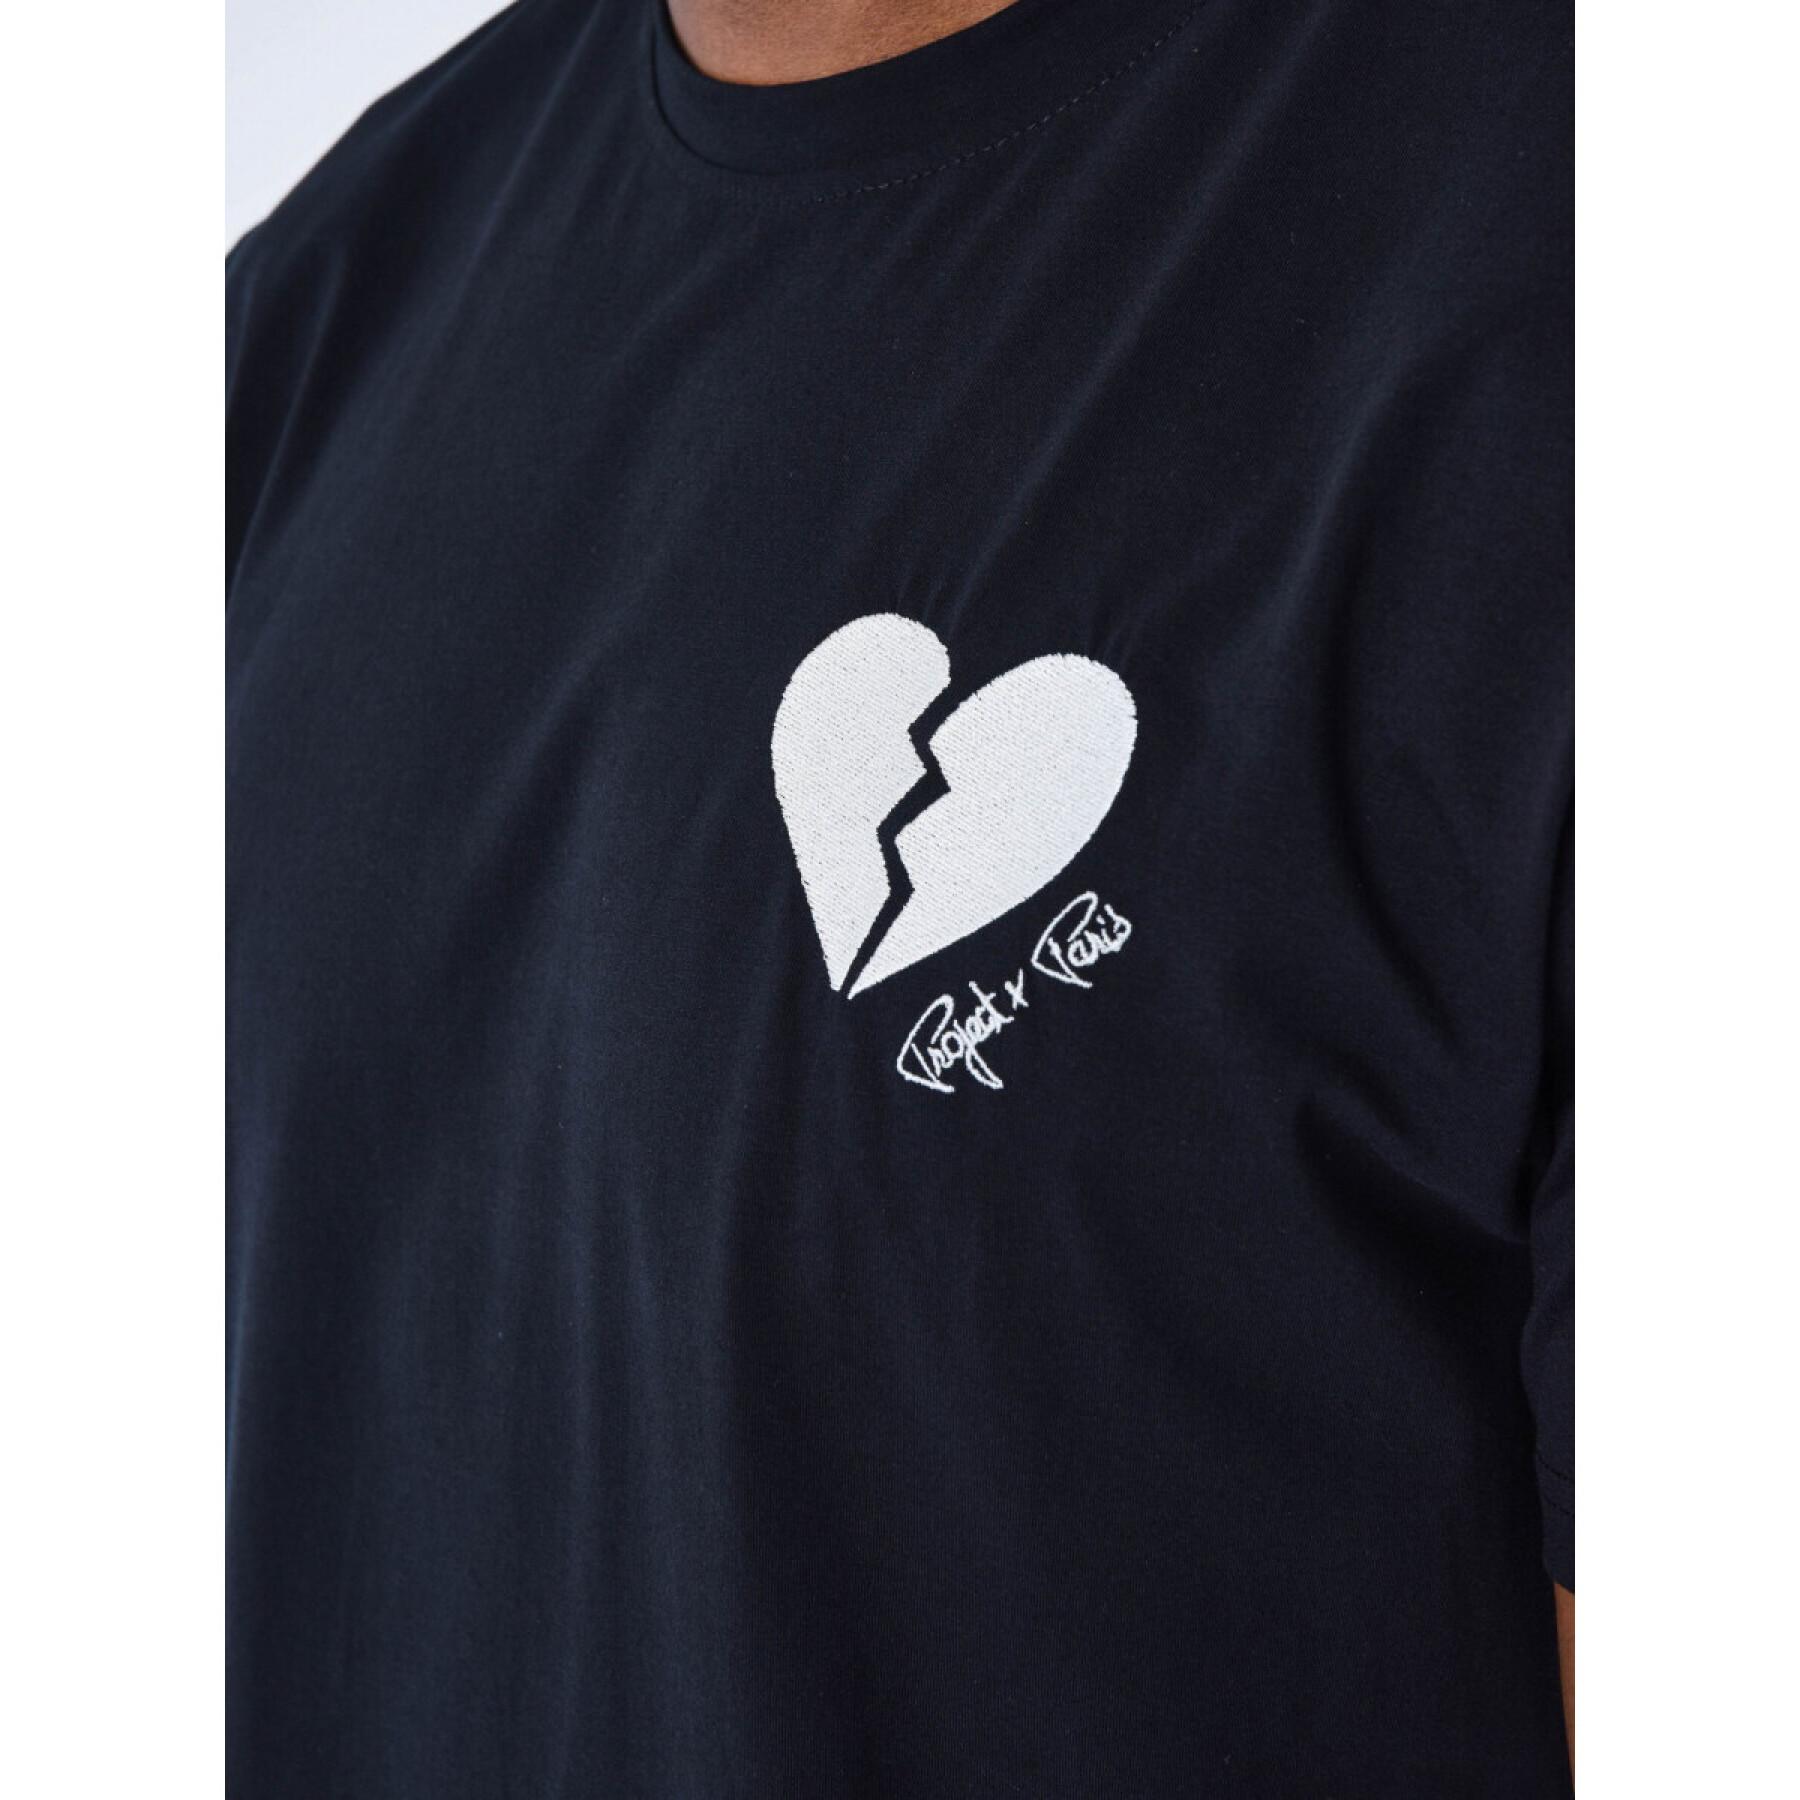 Broken heart T-shirt Project X Paris